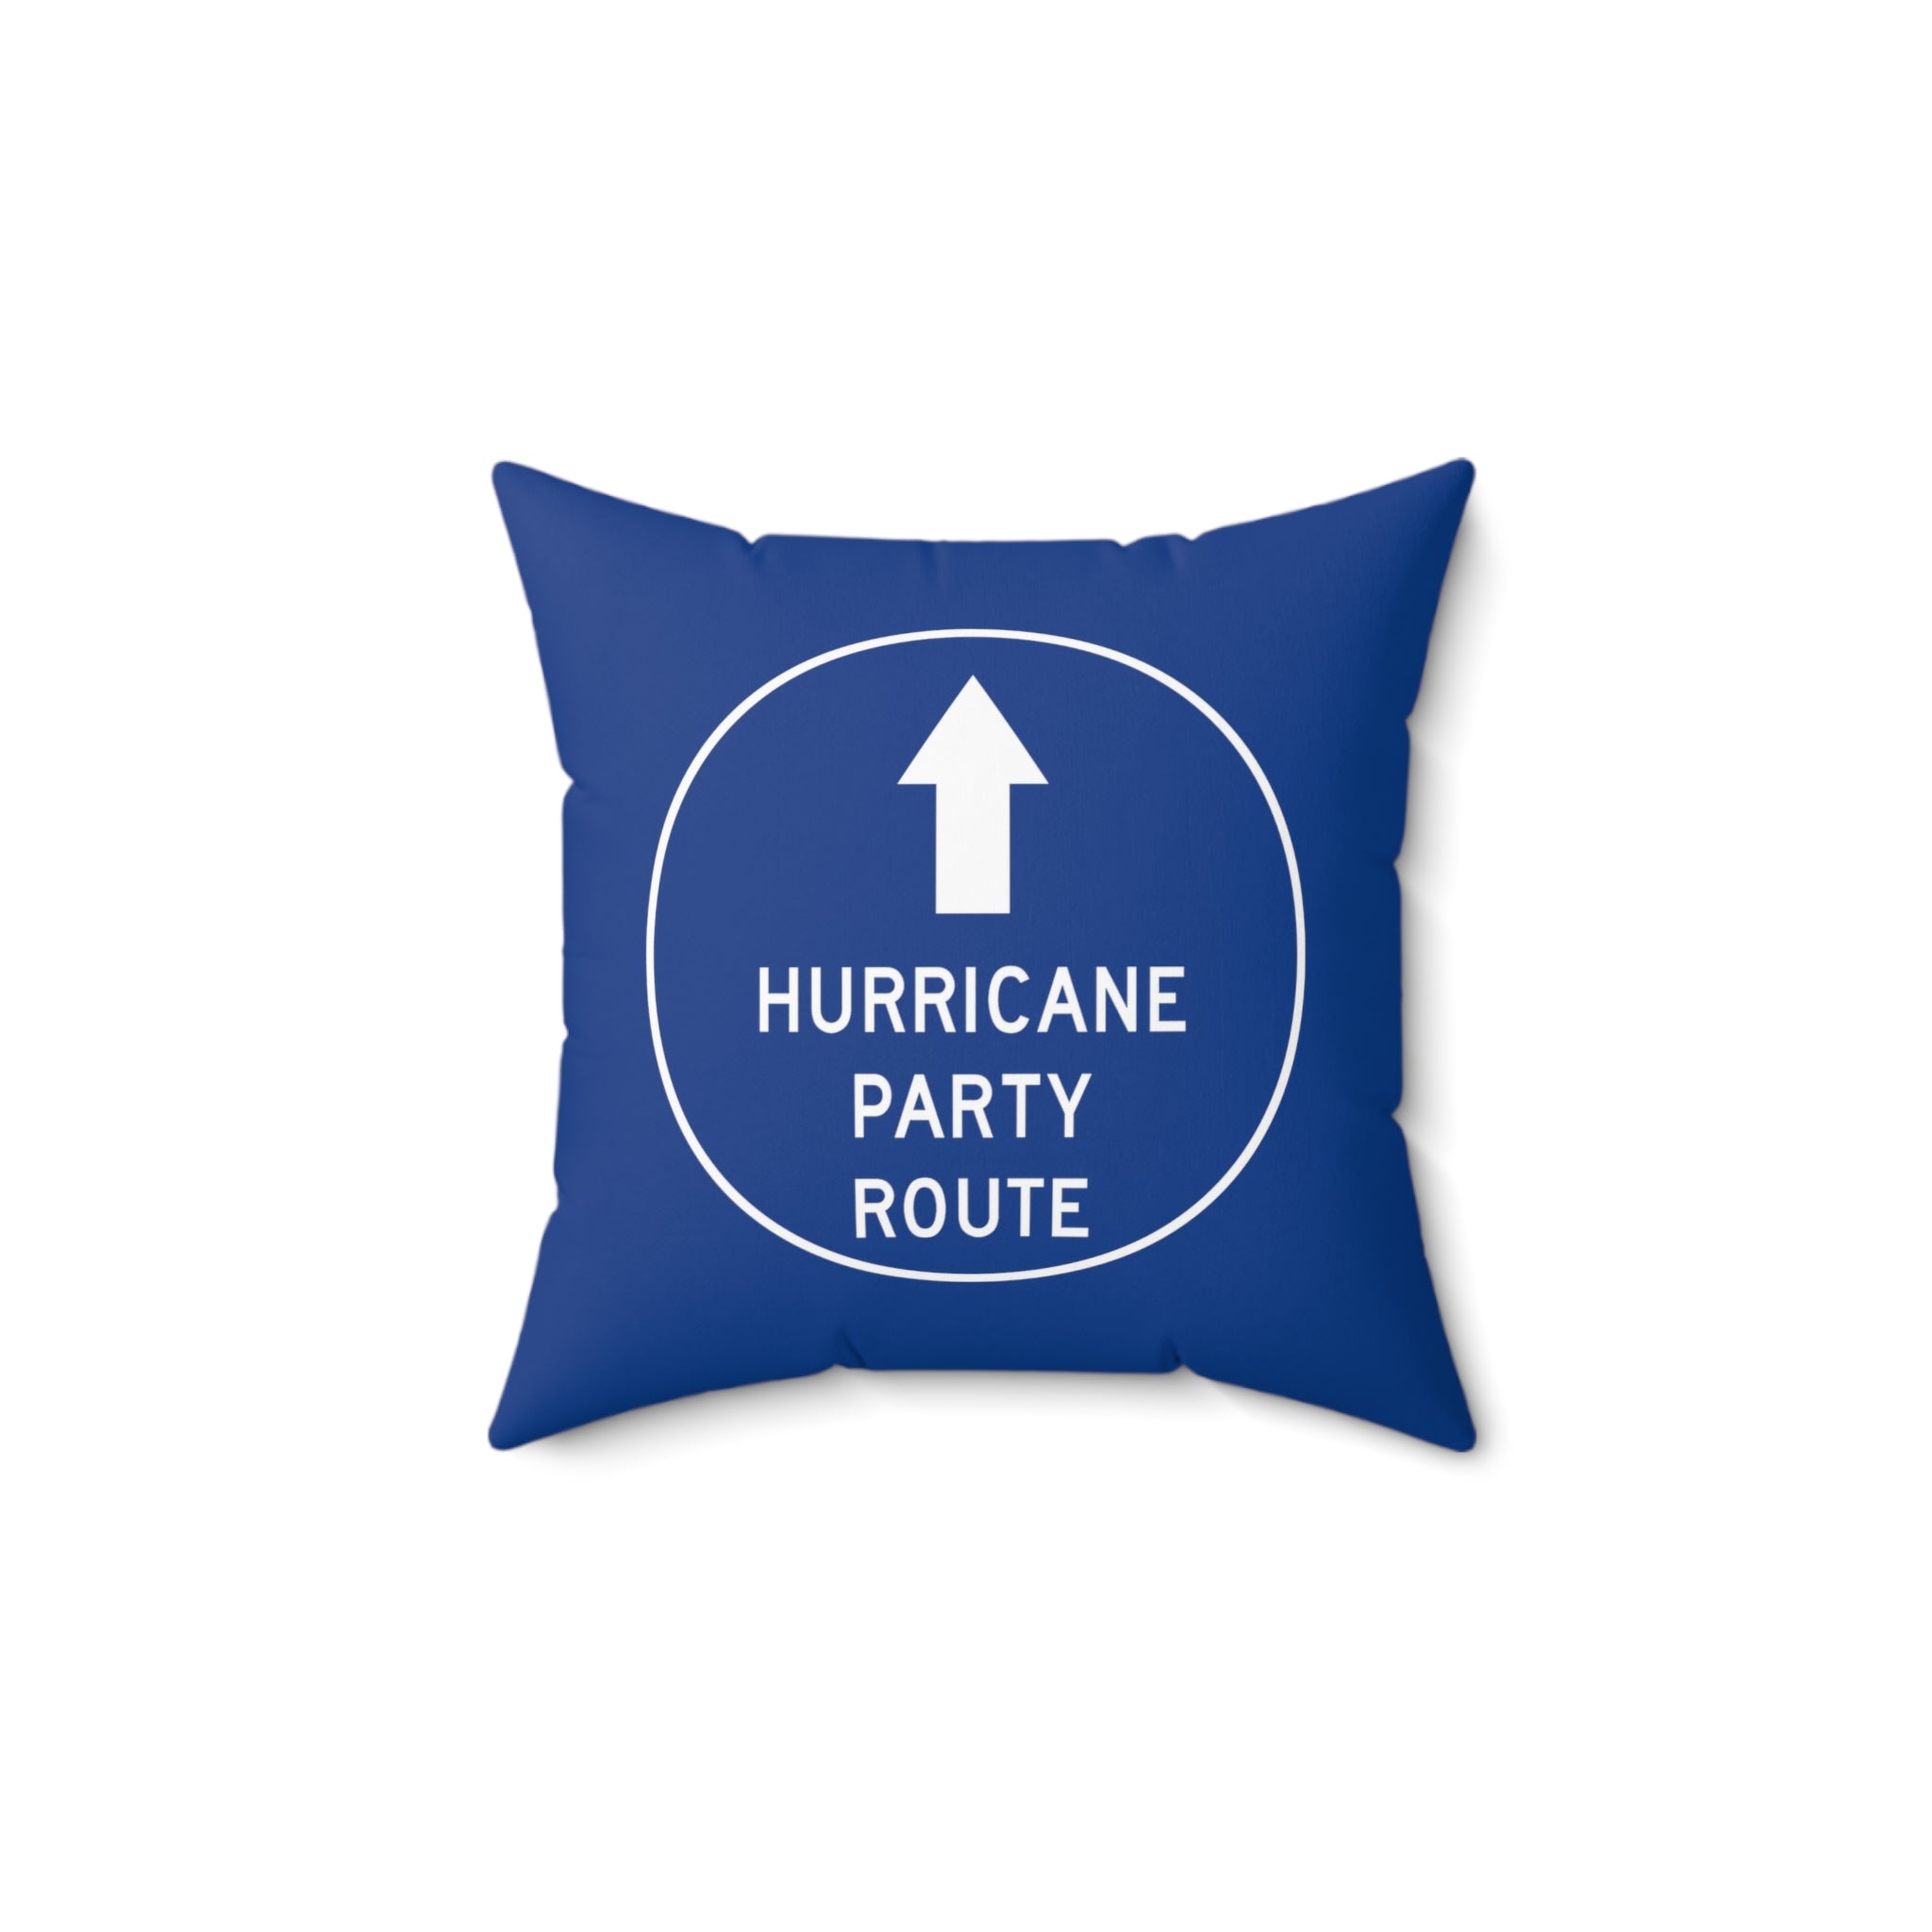 Hurricane Party Route Throw Pillow 